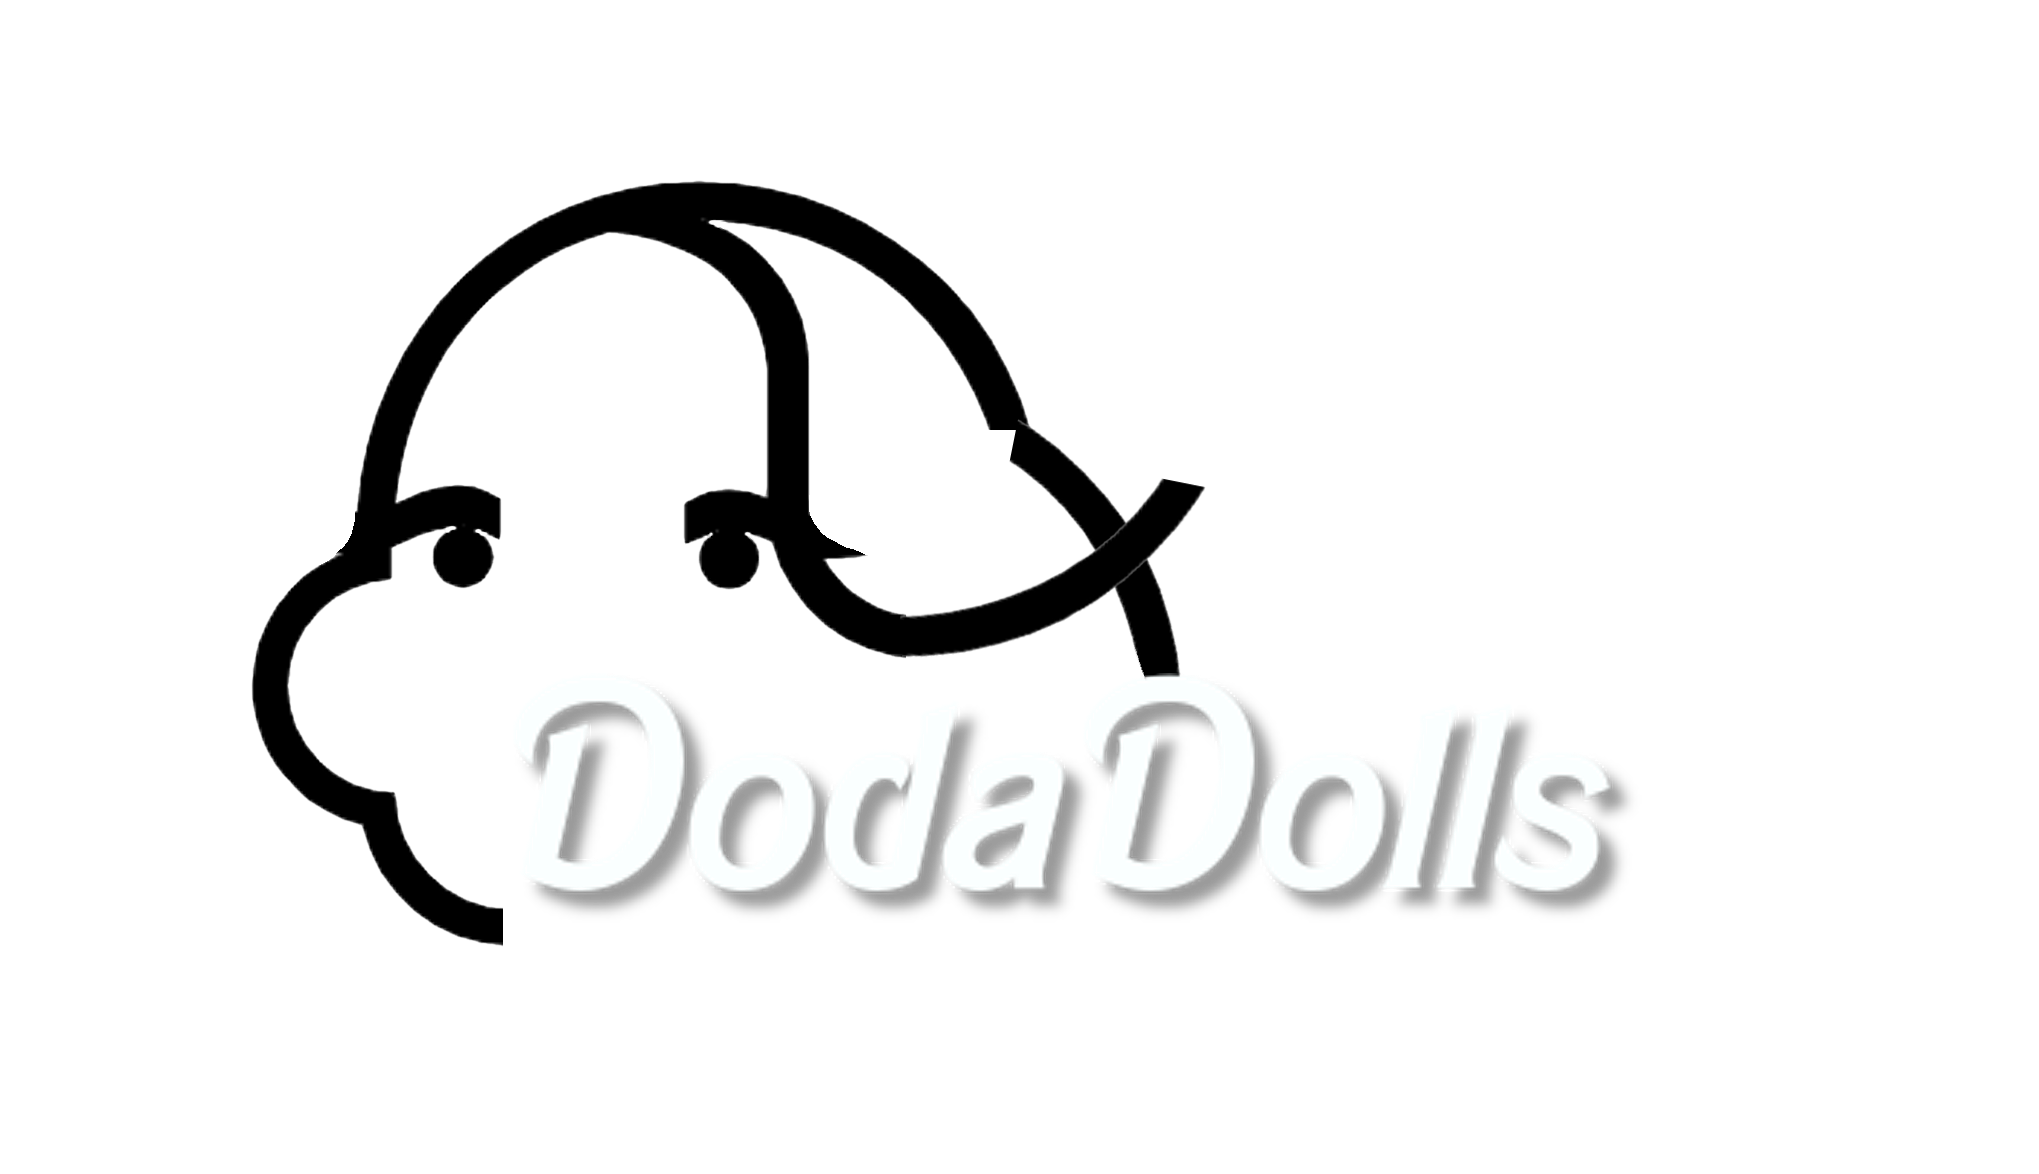 DodaDolls